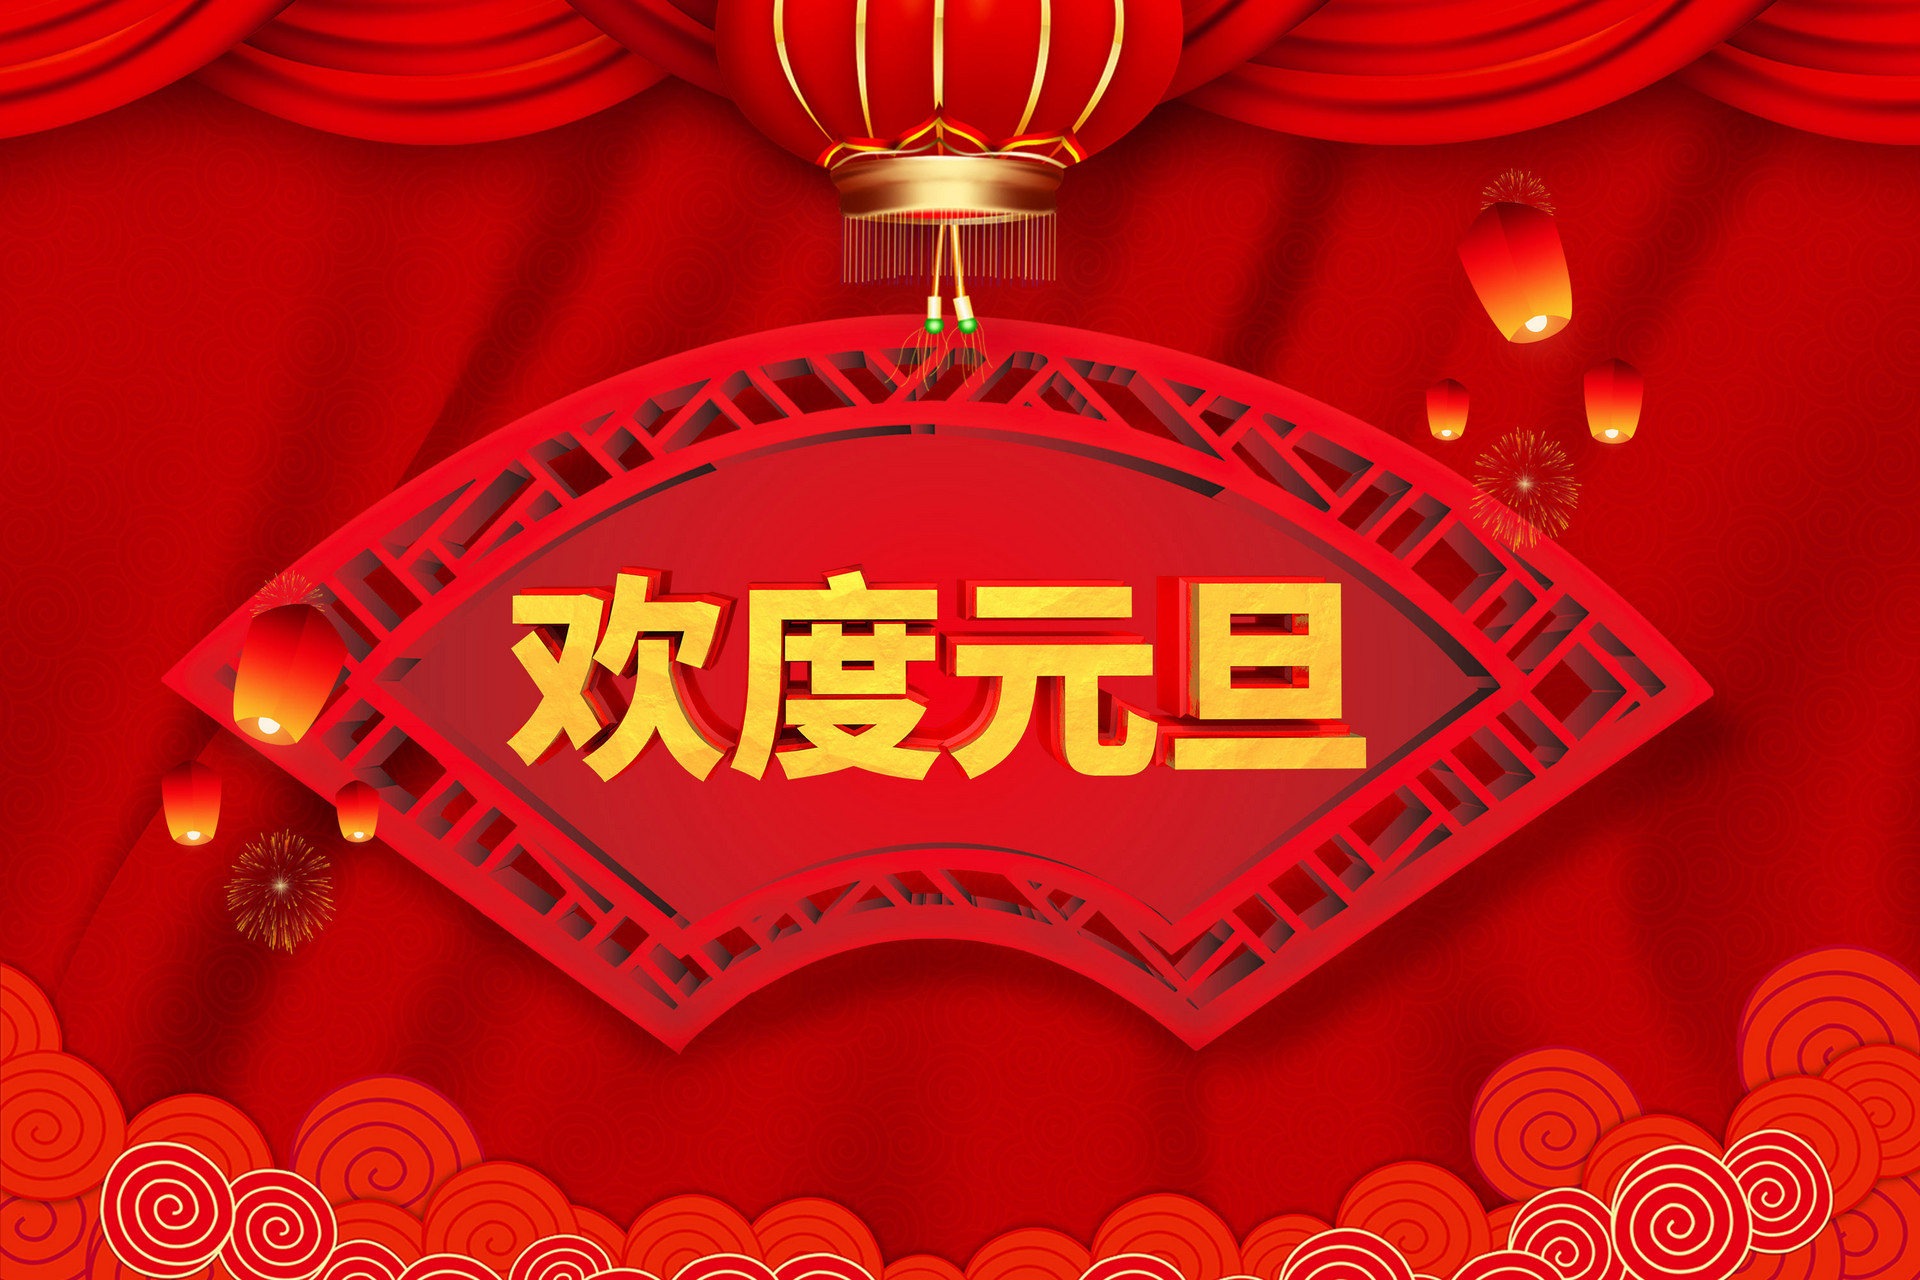 上海豪精點(diǎn)焊機公司2019年元旦放假通知